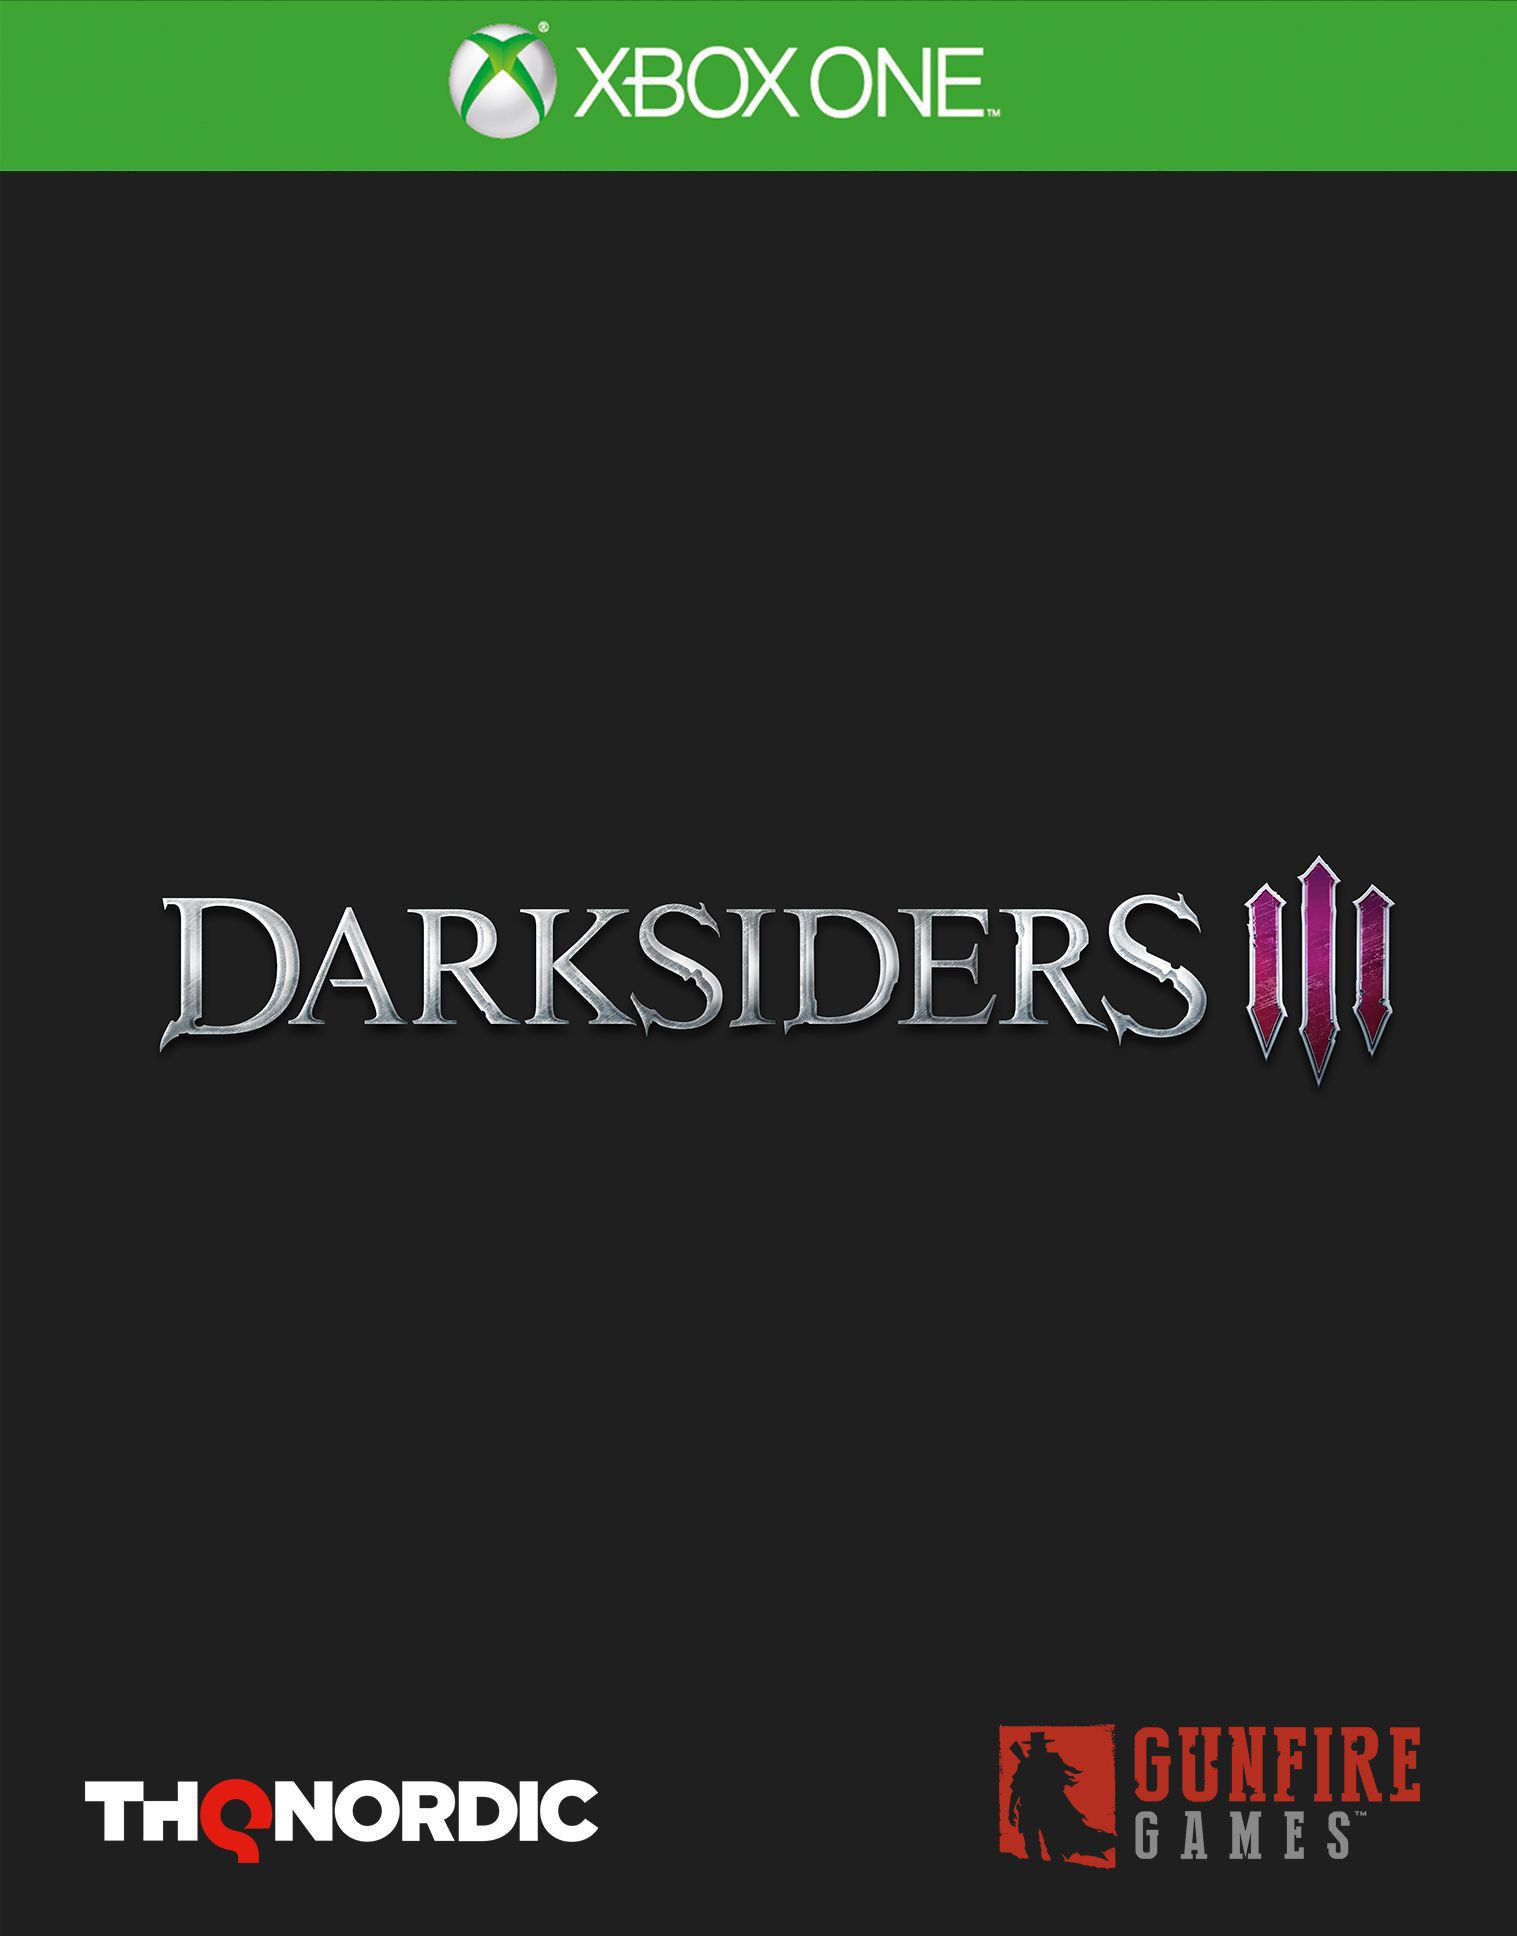 jaquette reduite de Darksiders III sur Xbox One